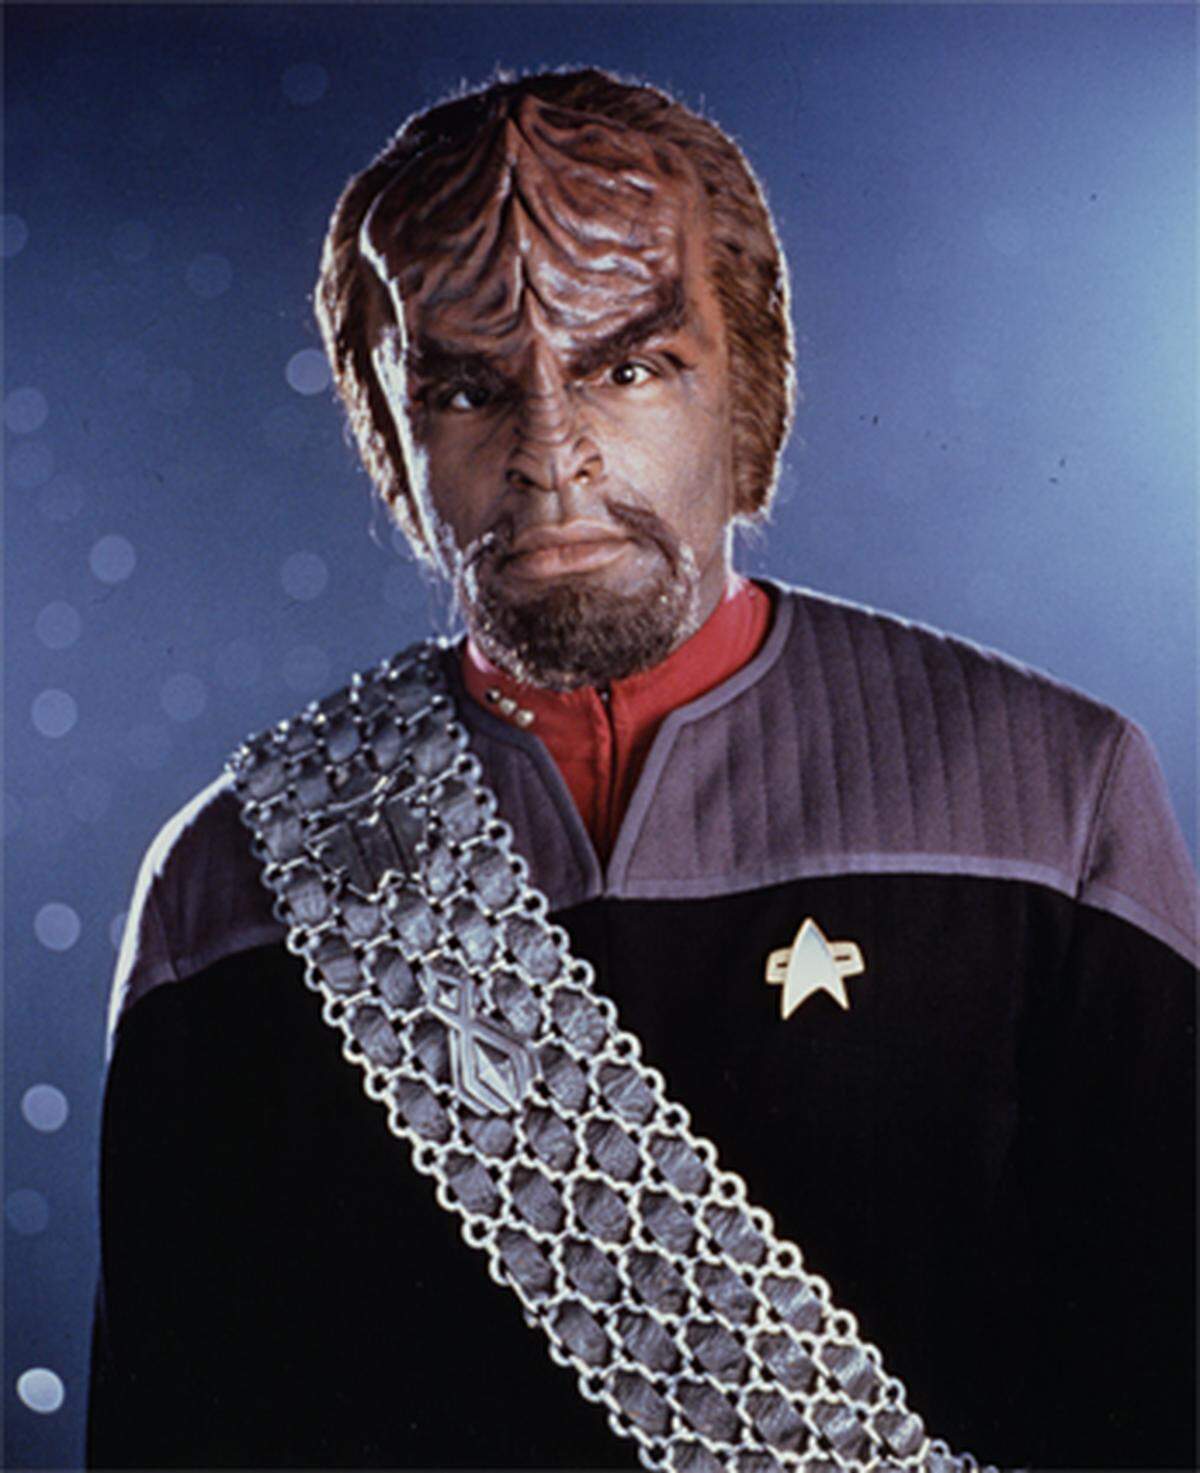 "Ihr Klingonen macht keine halben Sachen, was?"  Commander Riker zu Worf, als dieser einen mächtigen Pickel im Gesicht hat